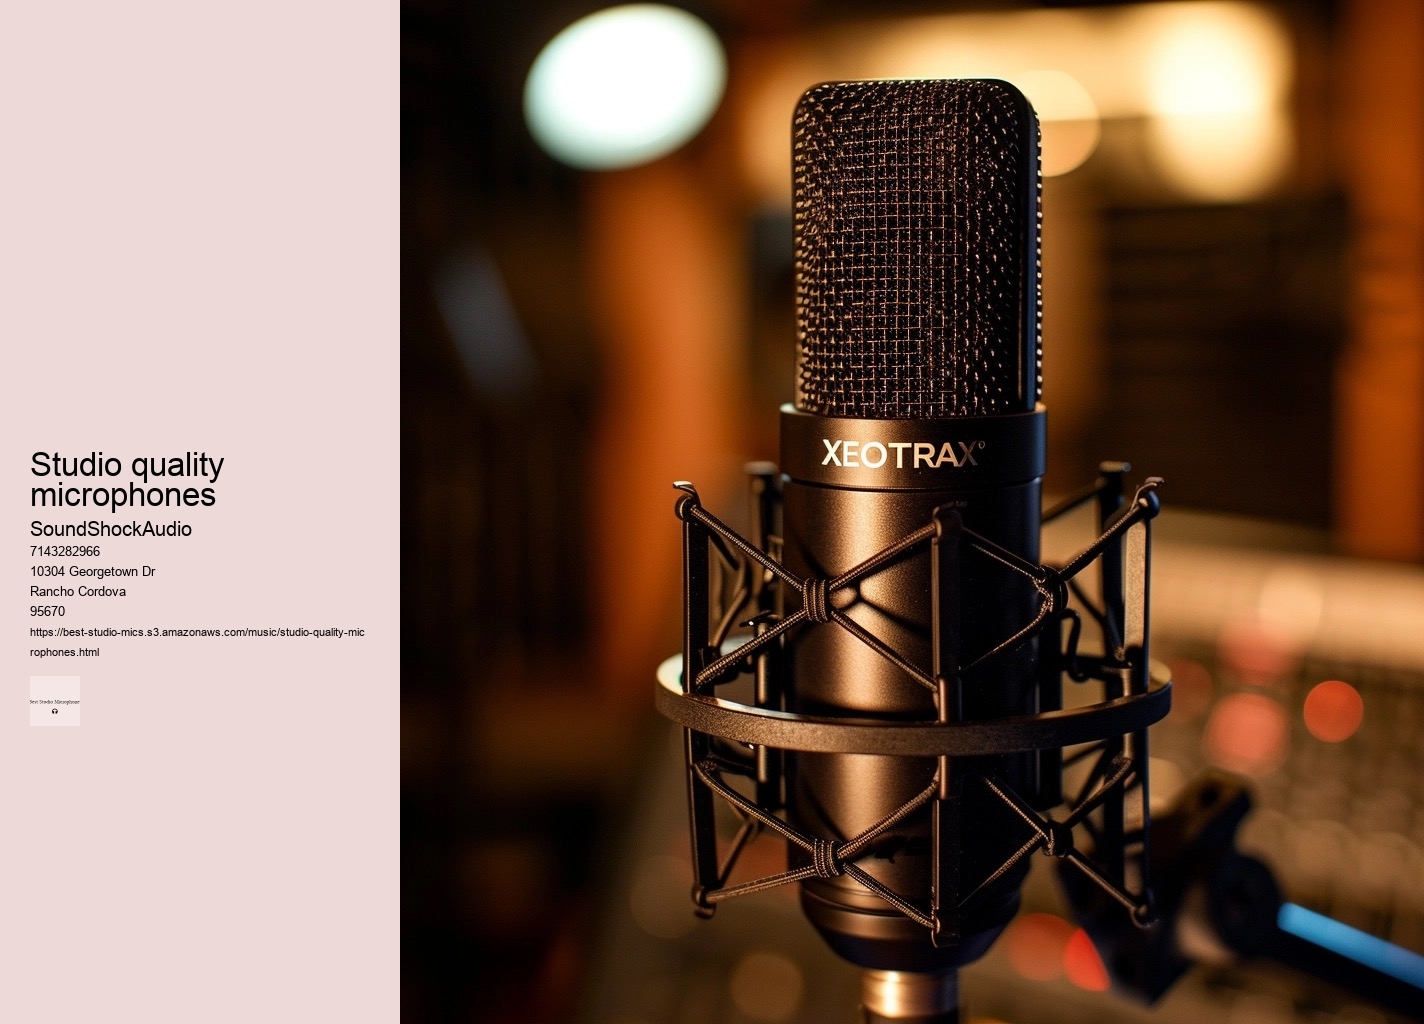 studio quality microphones